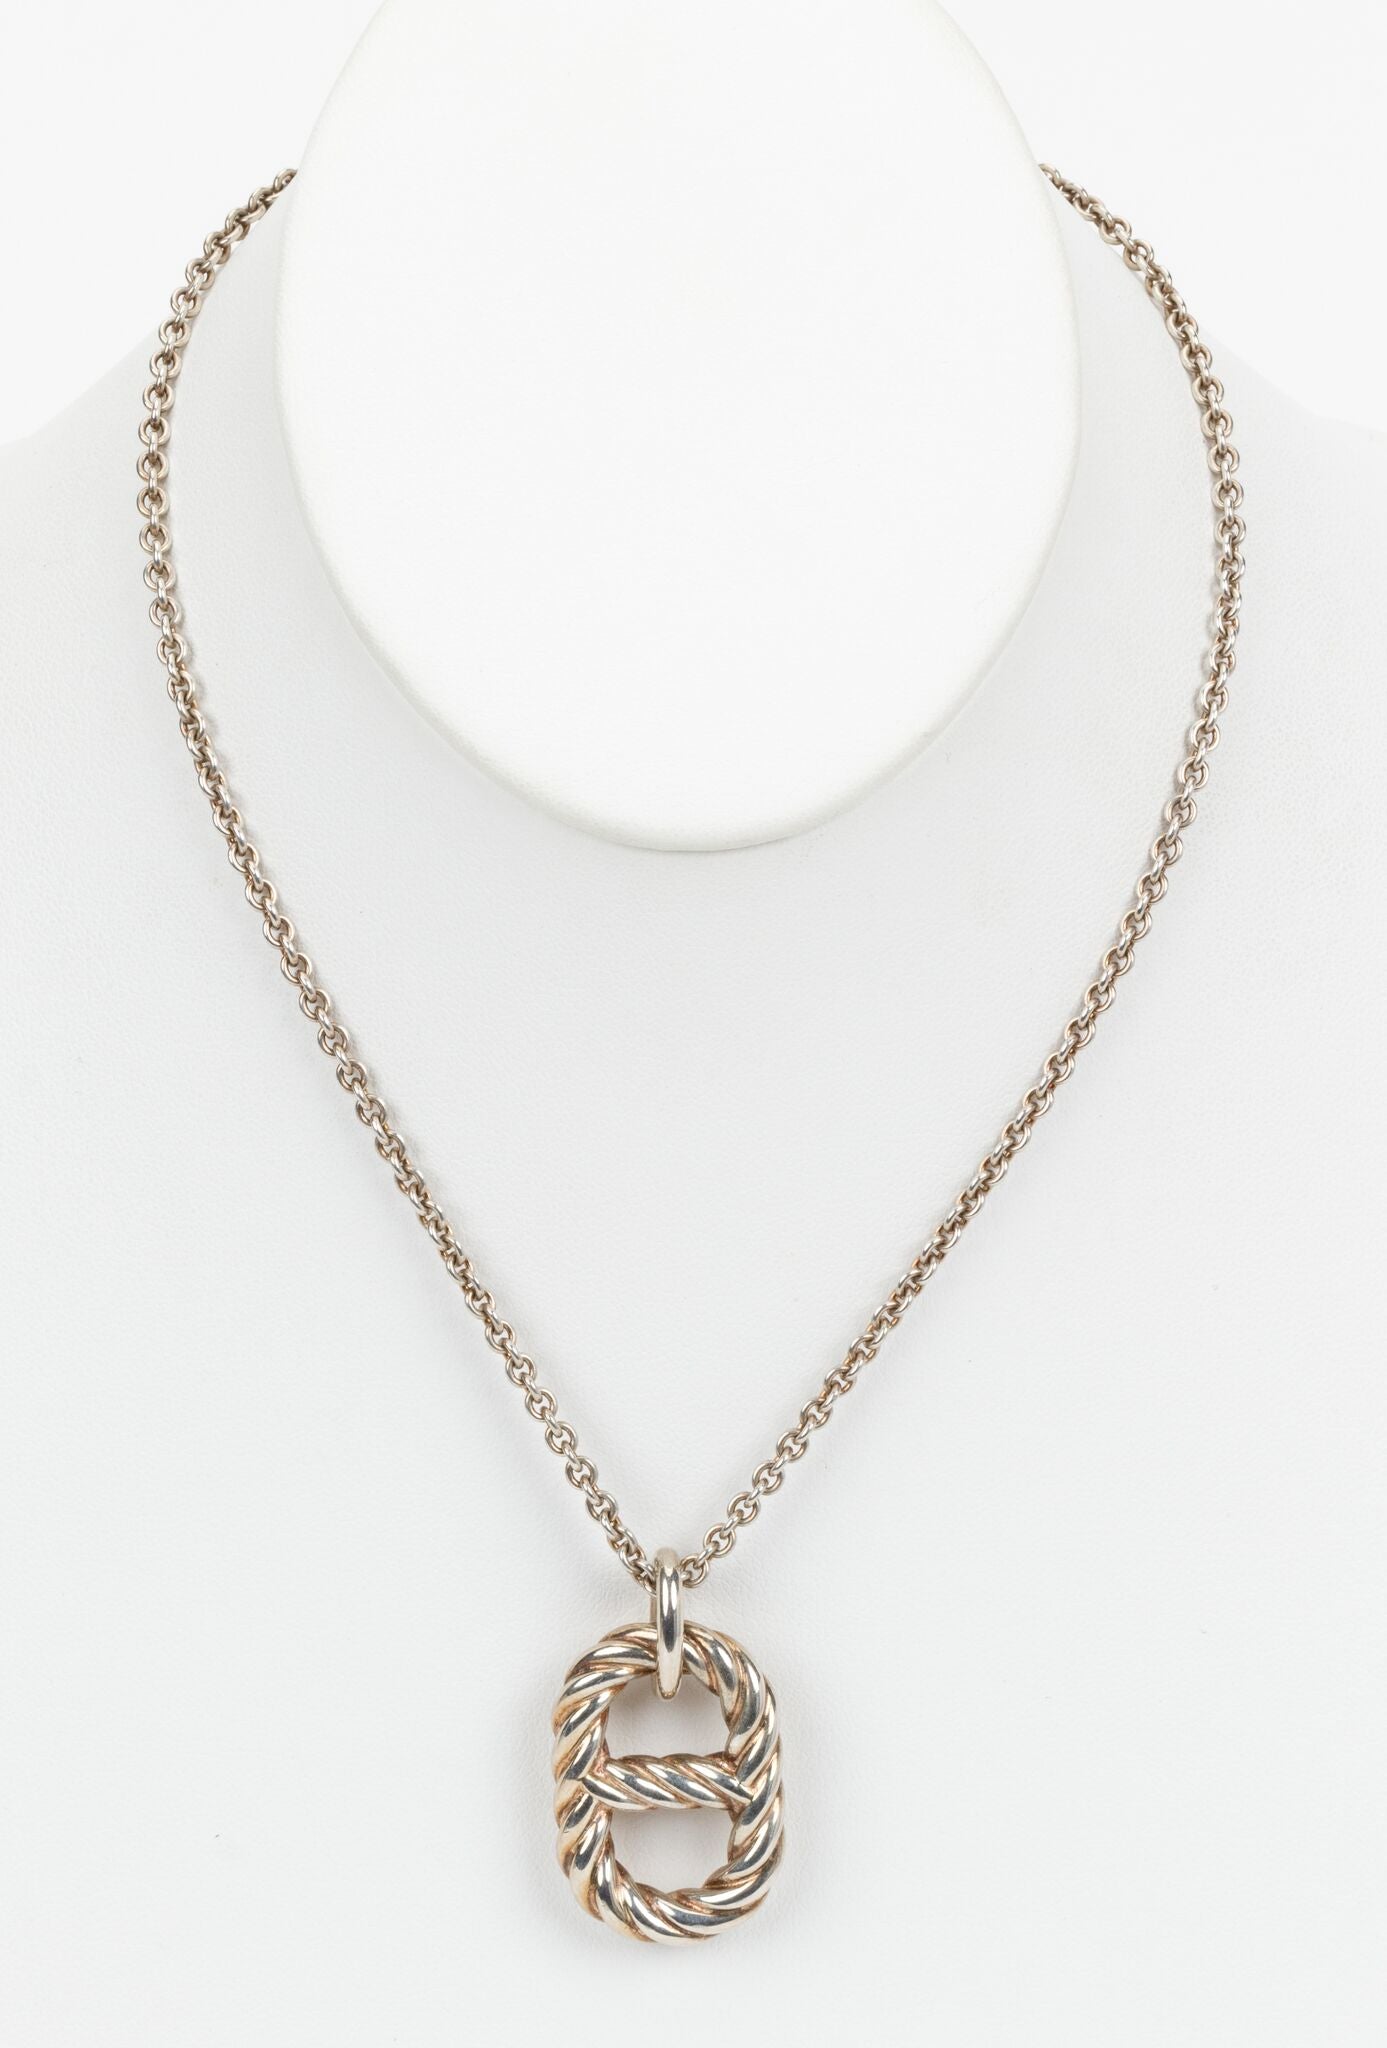 Necklace 5 CHANEL Silver (925) - VALOIS VINTAGE PARIS